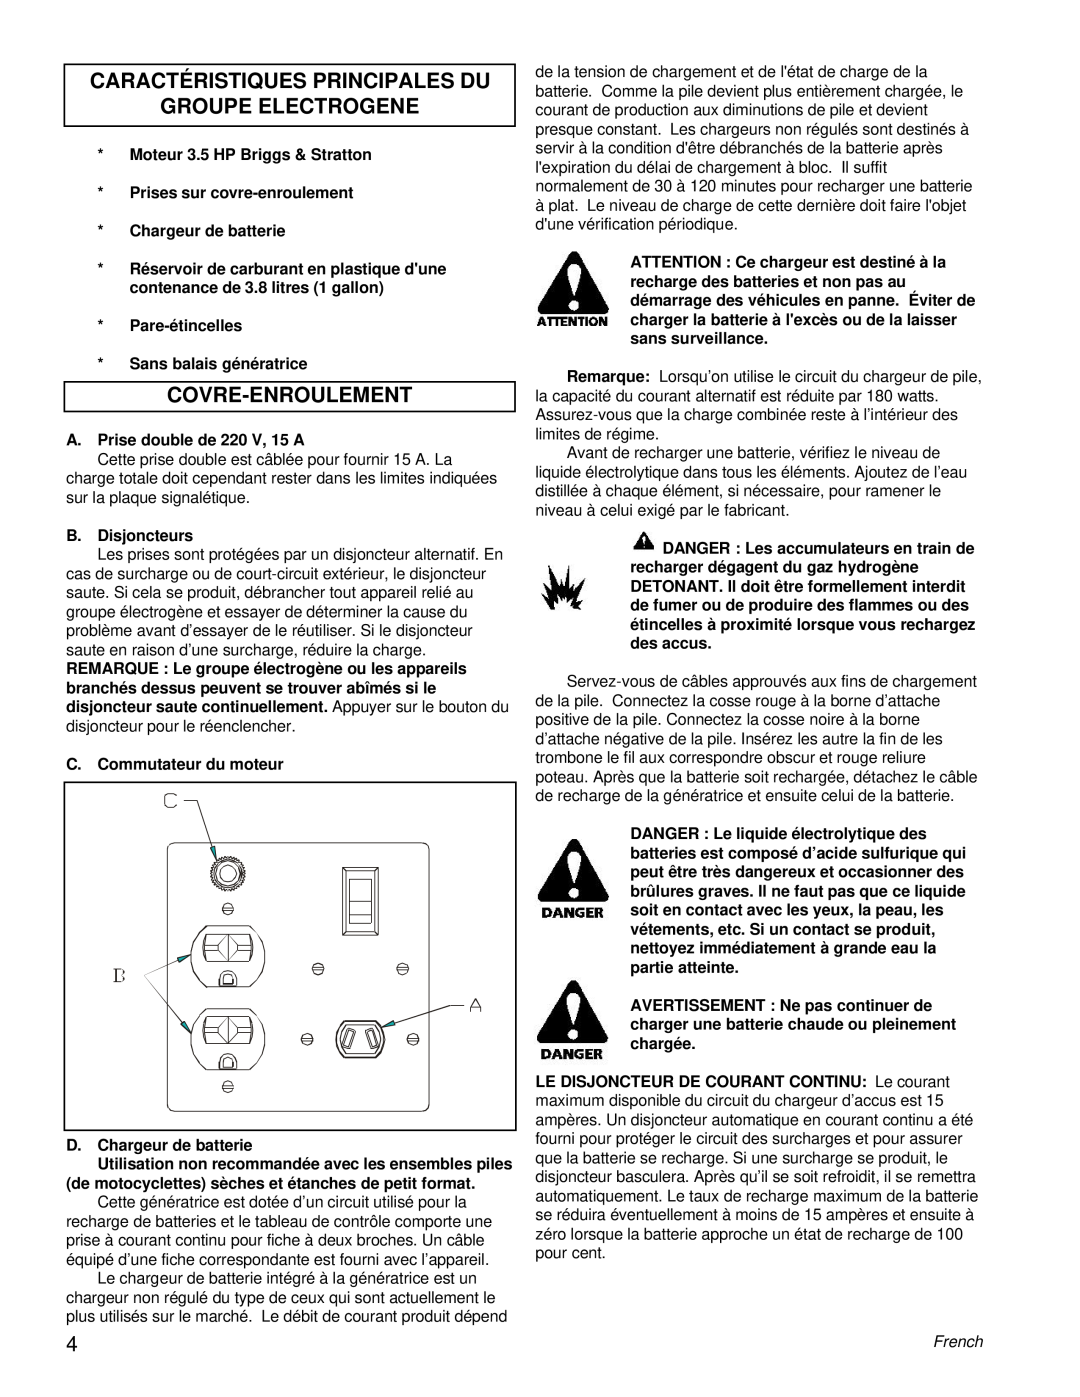 Powermate PE0402042.01 manual Caractéristiques Principales Du Groupe Electrogene, Covre-Enroulement 